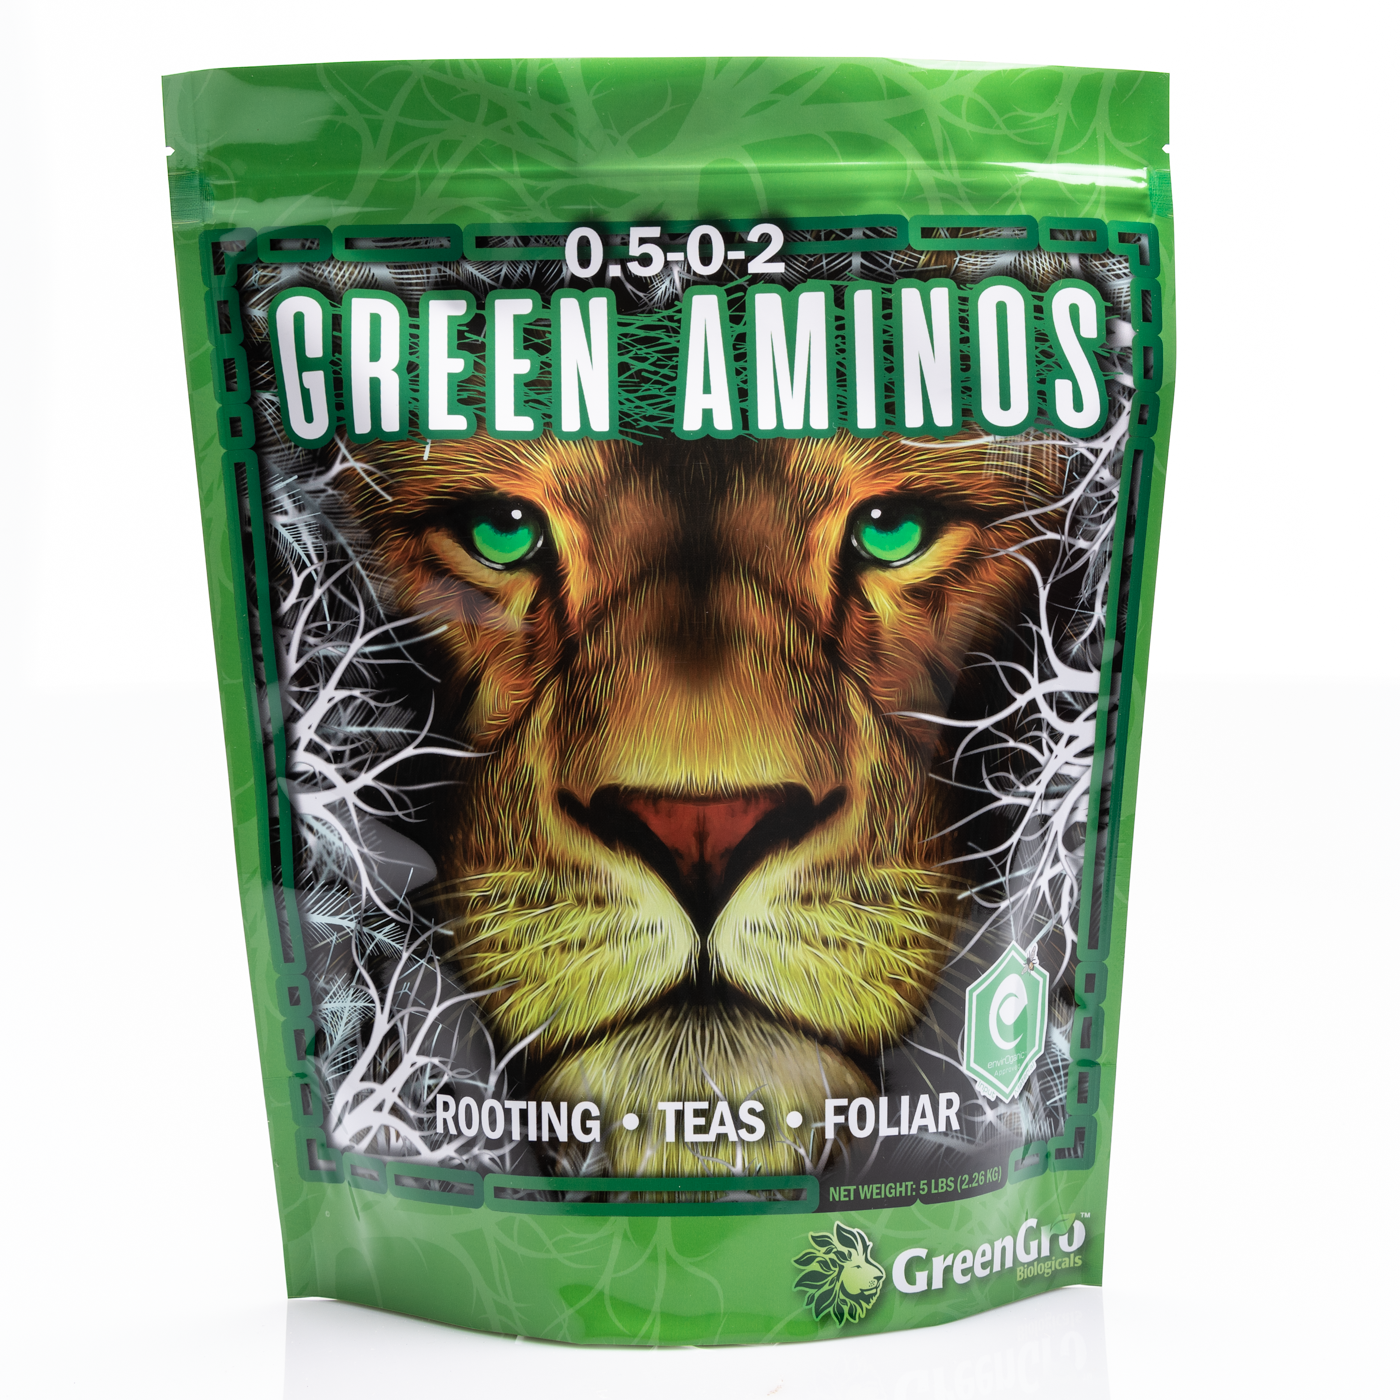 Green aminos Bag Front